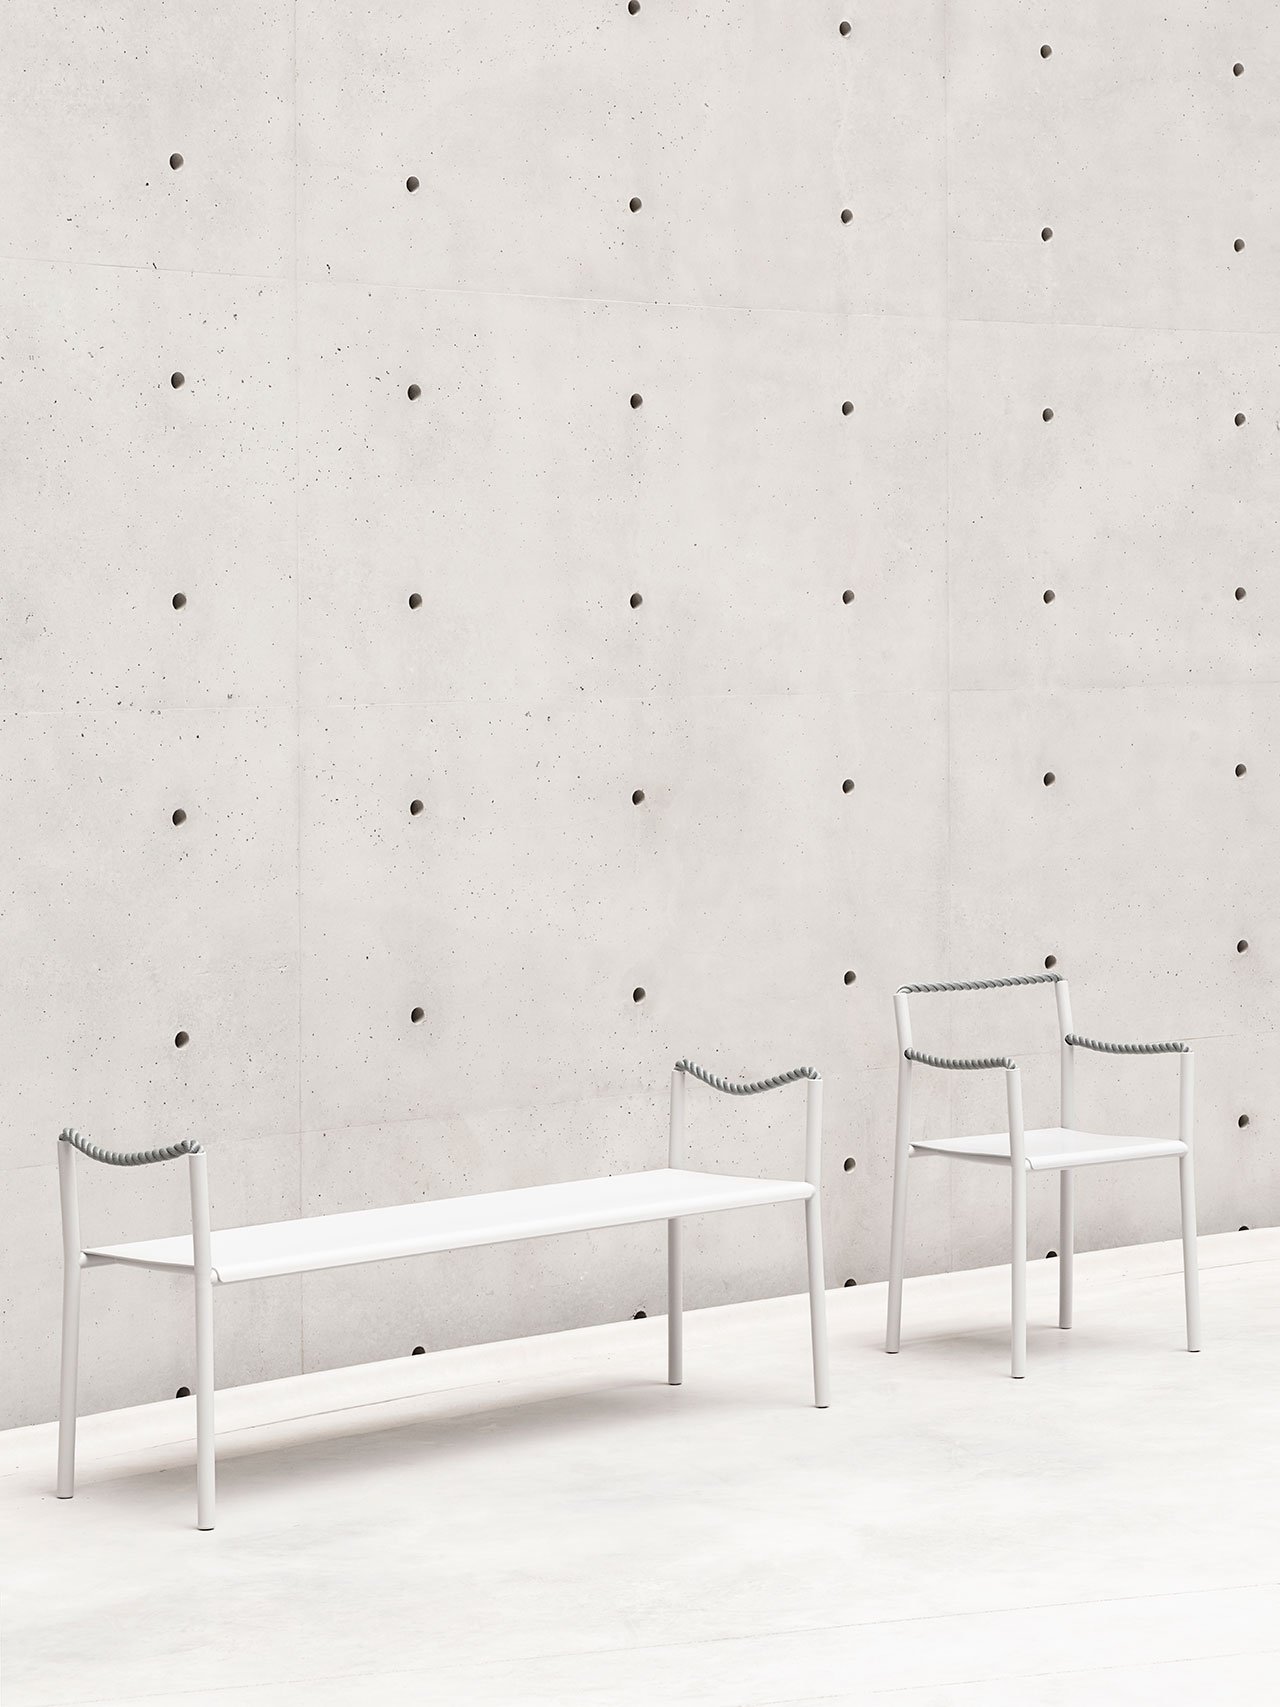 Ronan et Erwan Bouroullec, Chaise corde, 2020. © Studio Bouroullec© Tadao Ando Architect &amp; Associates, NeM / Niney et MarcaCourtesy Bourse de Commerce - Pinault Collection